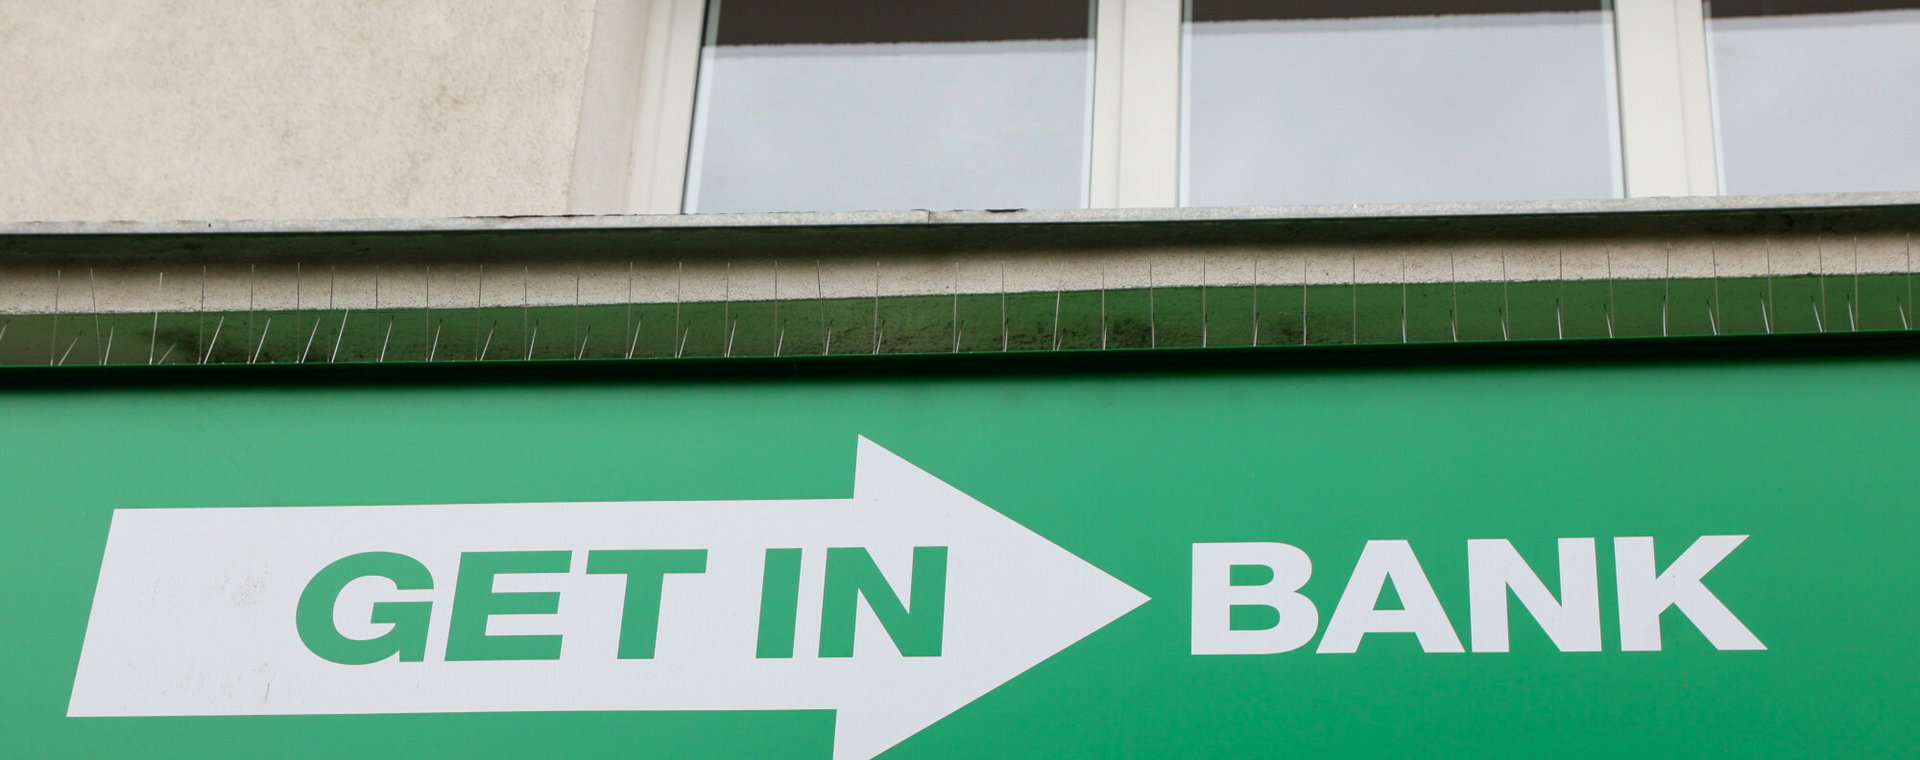 Wkrótce może zostać ogłoszona upadłość Getin Banku. Co to oznacza dla frankowiczów?